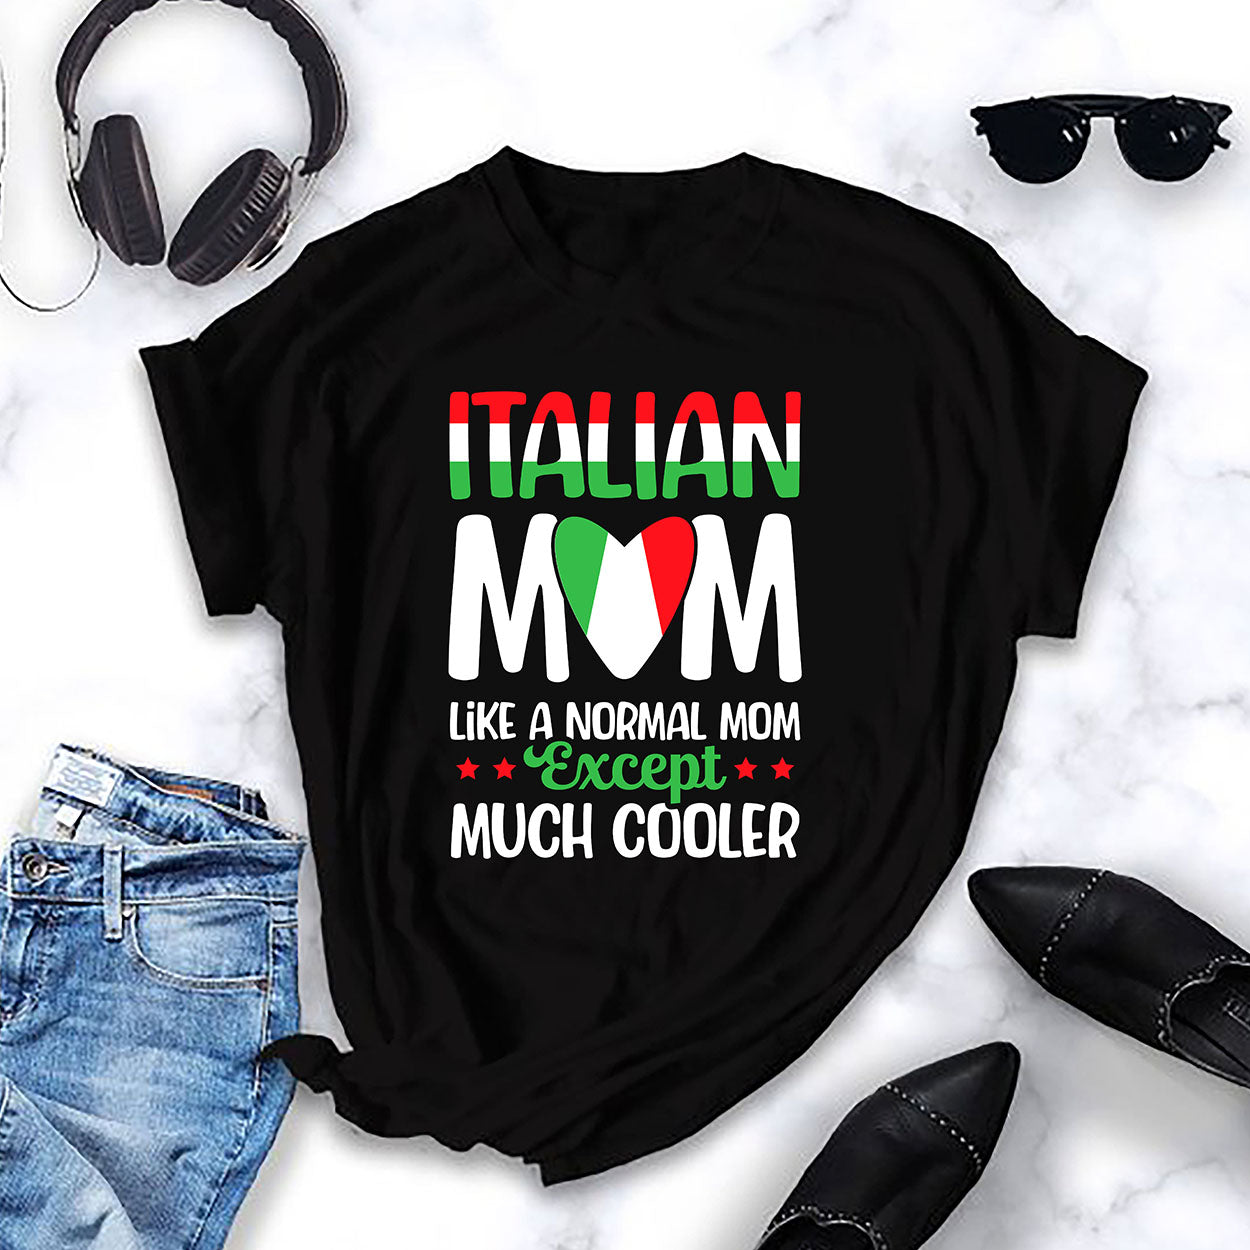 La maglietta da donna delle mamme italiane è più bella